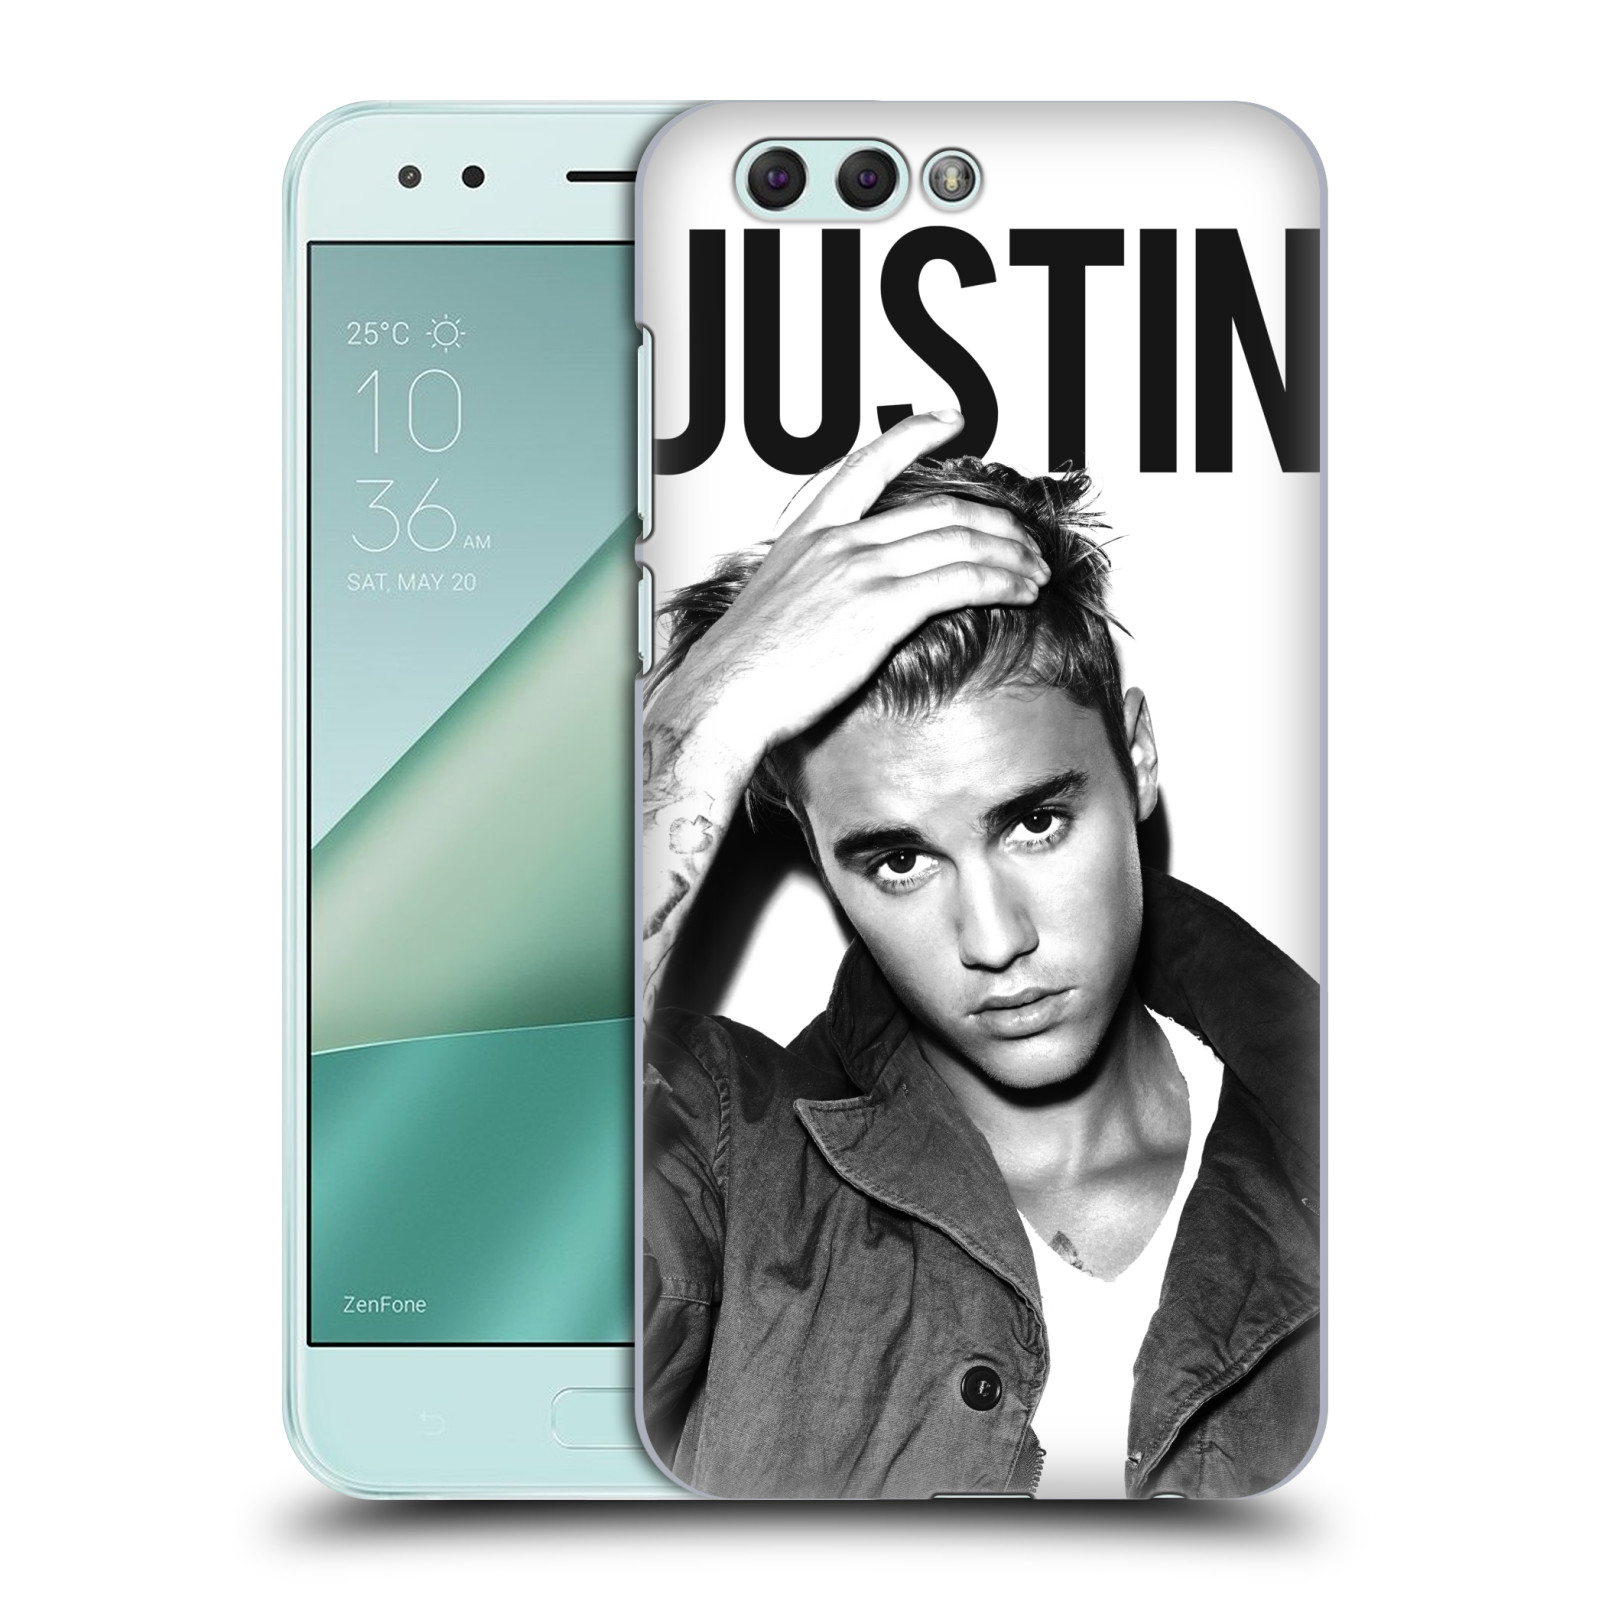 HEAD CASE plastový obal na mobil Asus Zenfone 4 ZE554KL Justin Bieber foto Purpose černá a bílá